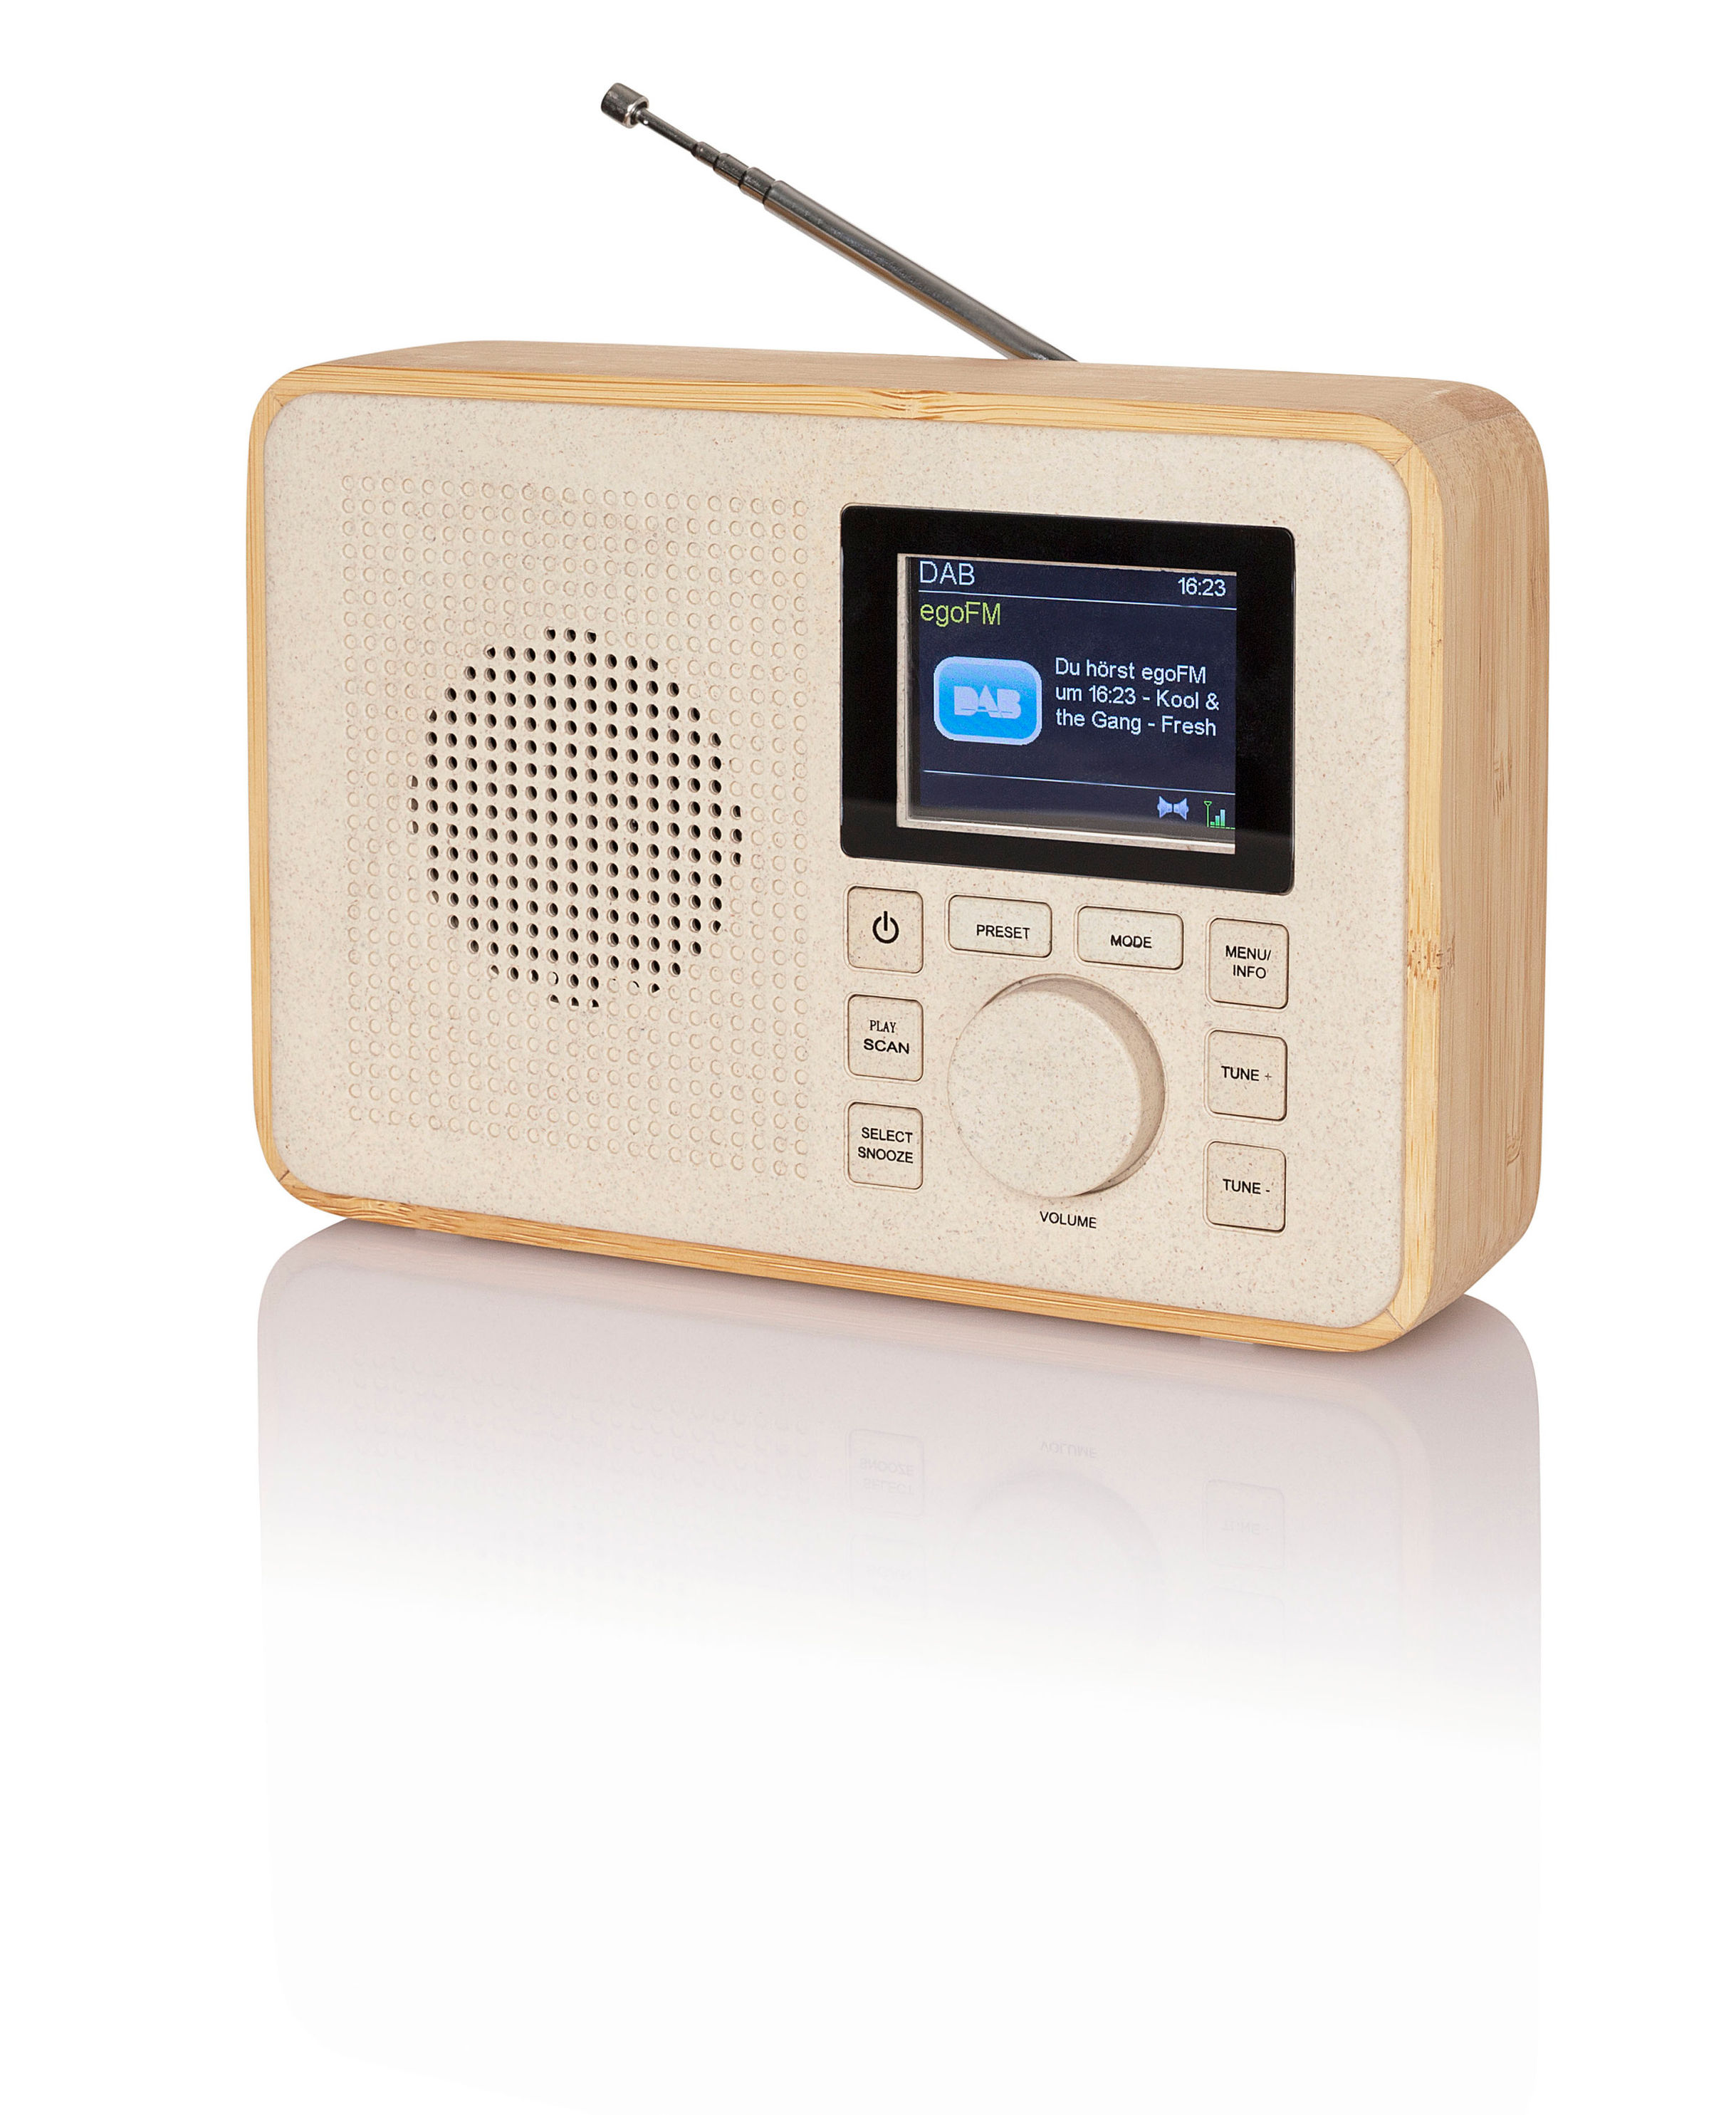 Tragbares DAB-Radio mit Holzrahmen bestellen | Weltbild.de